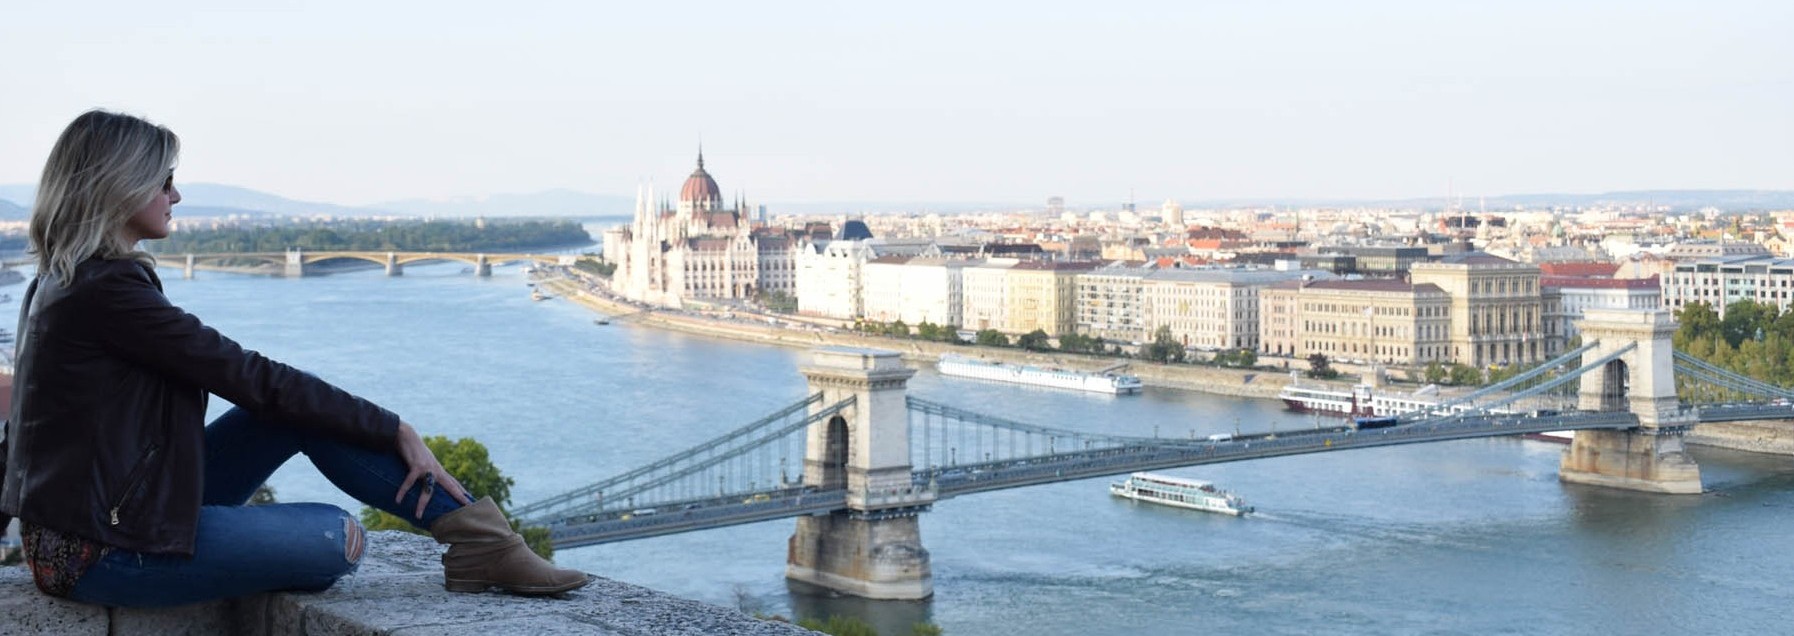 dicas de budapeste - castelo de budapeste - vista ponte - parlamento - lala rebelo